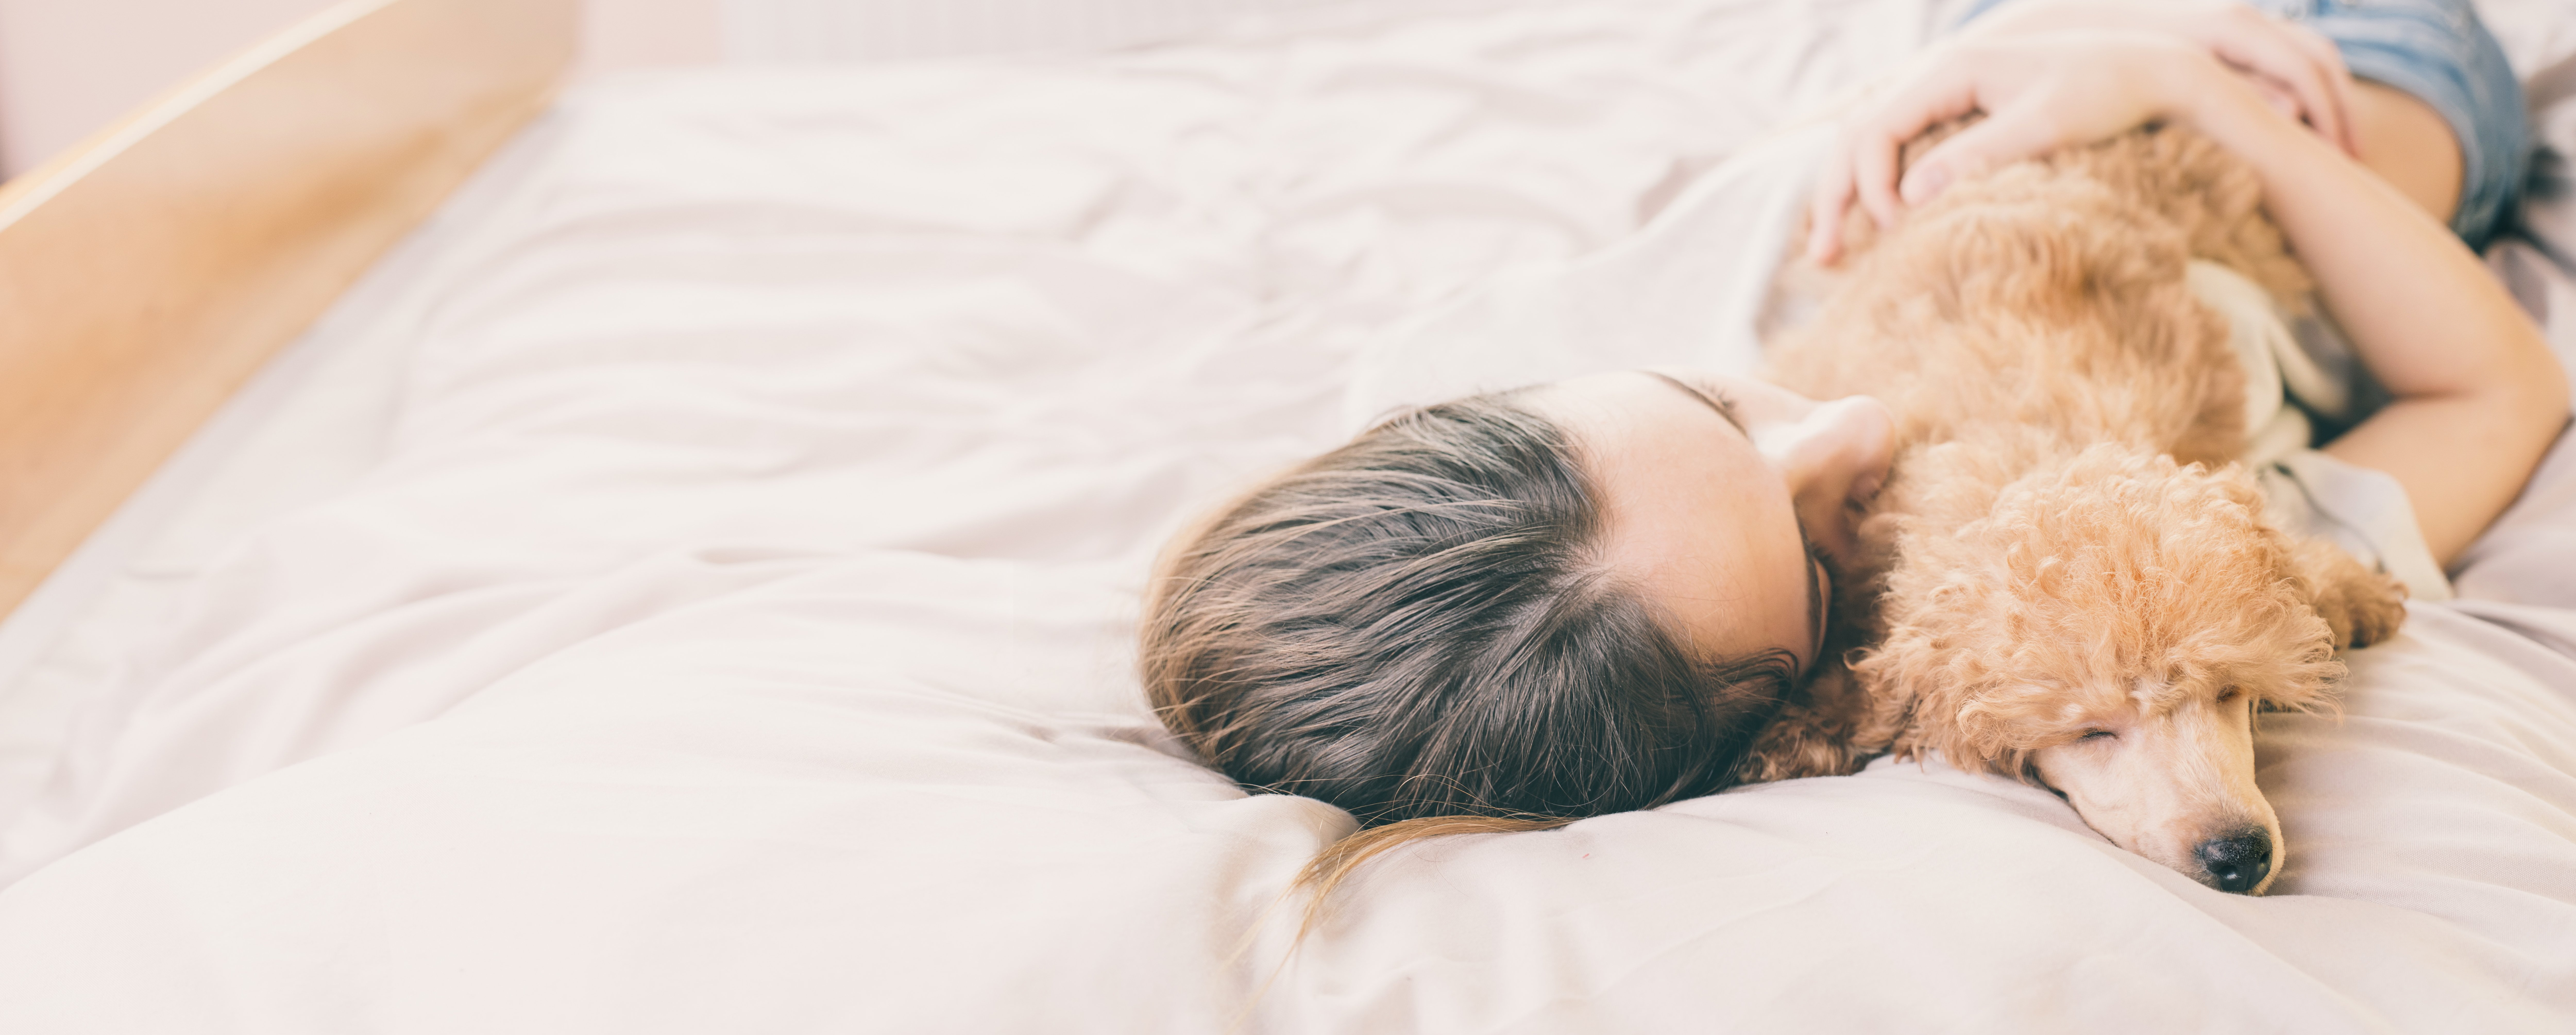 Mujer con perro abrazada en la cama. Fuente: Shutterstock